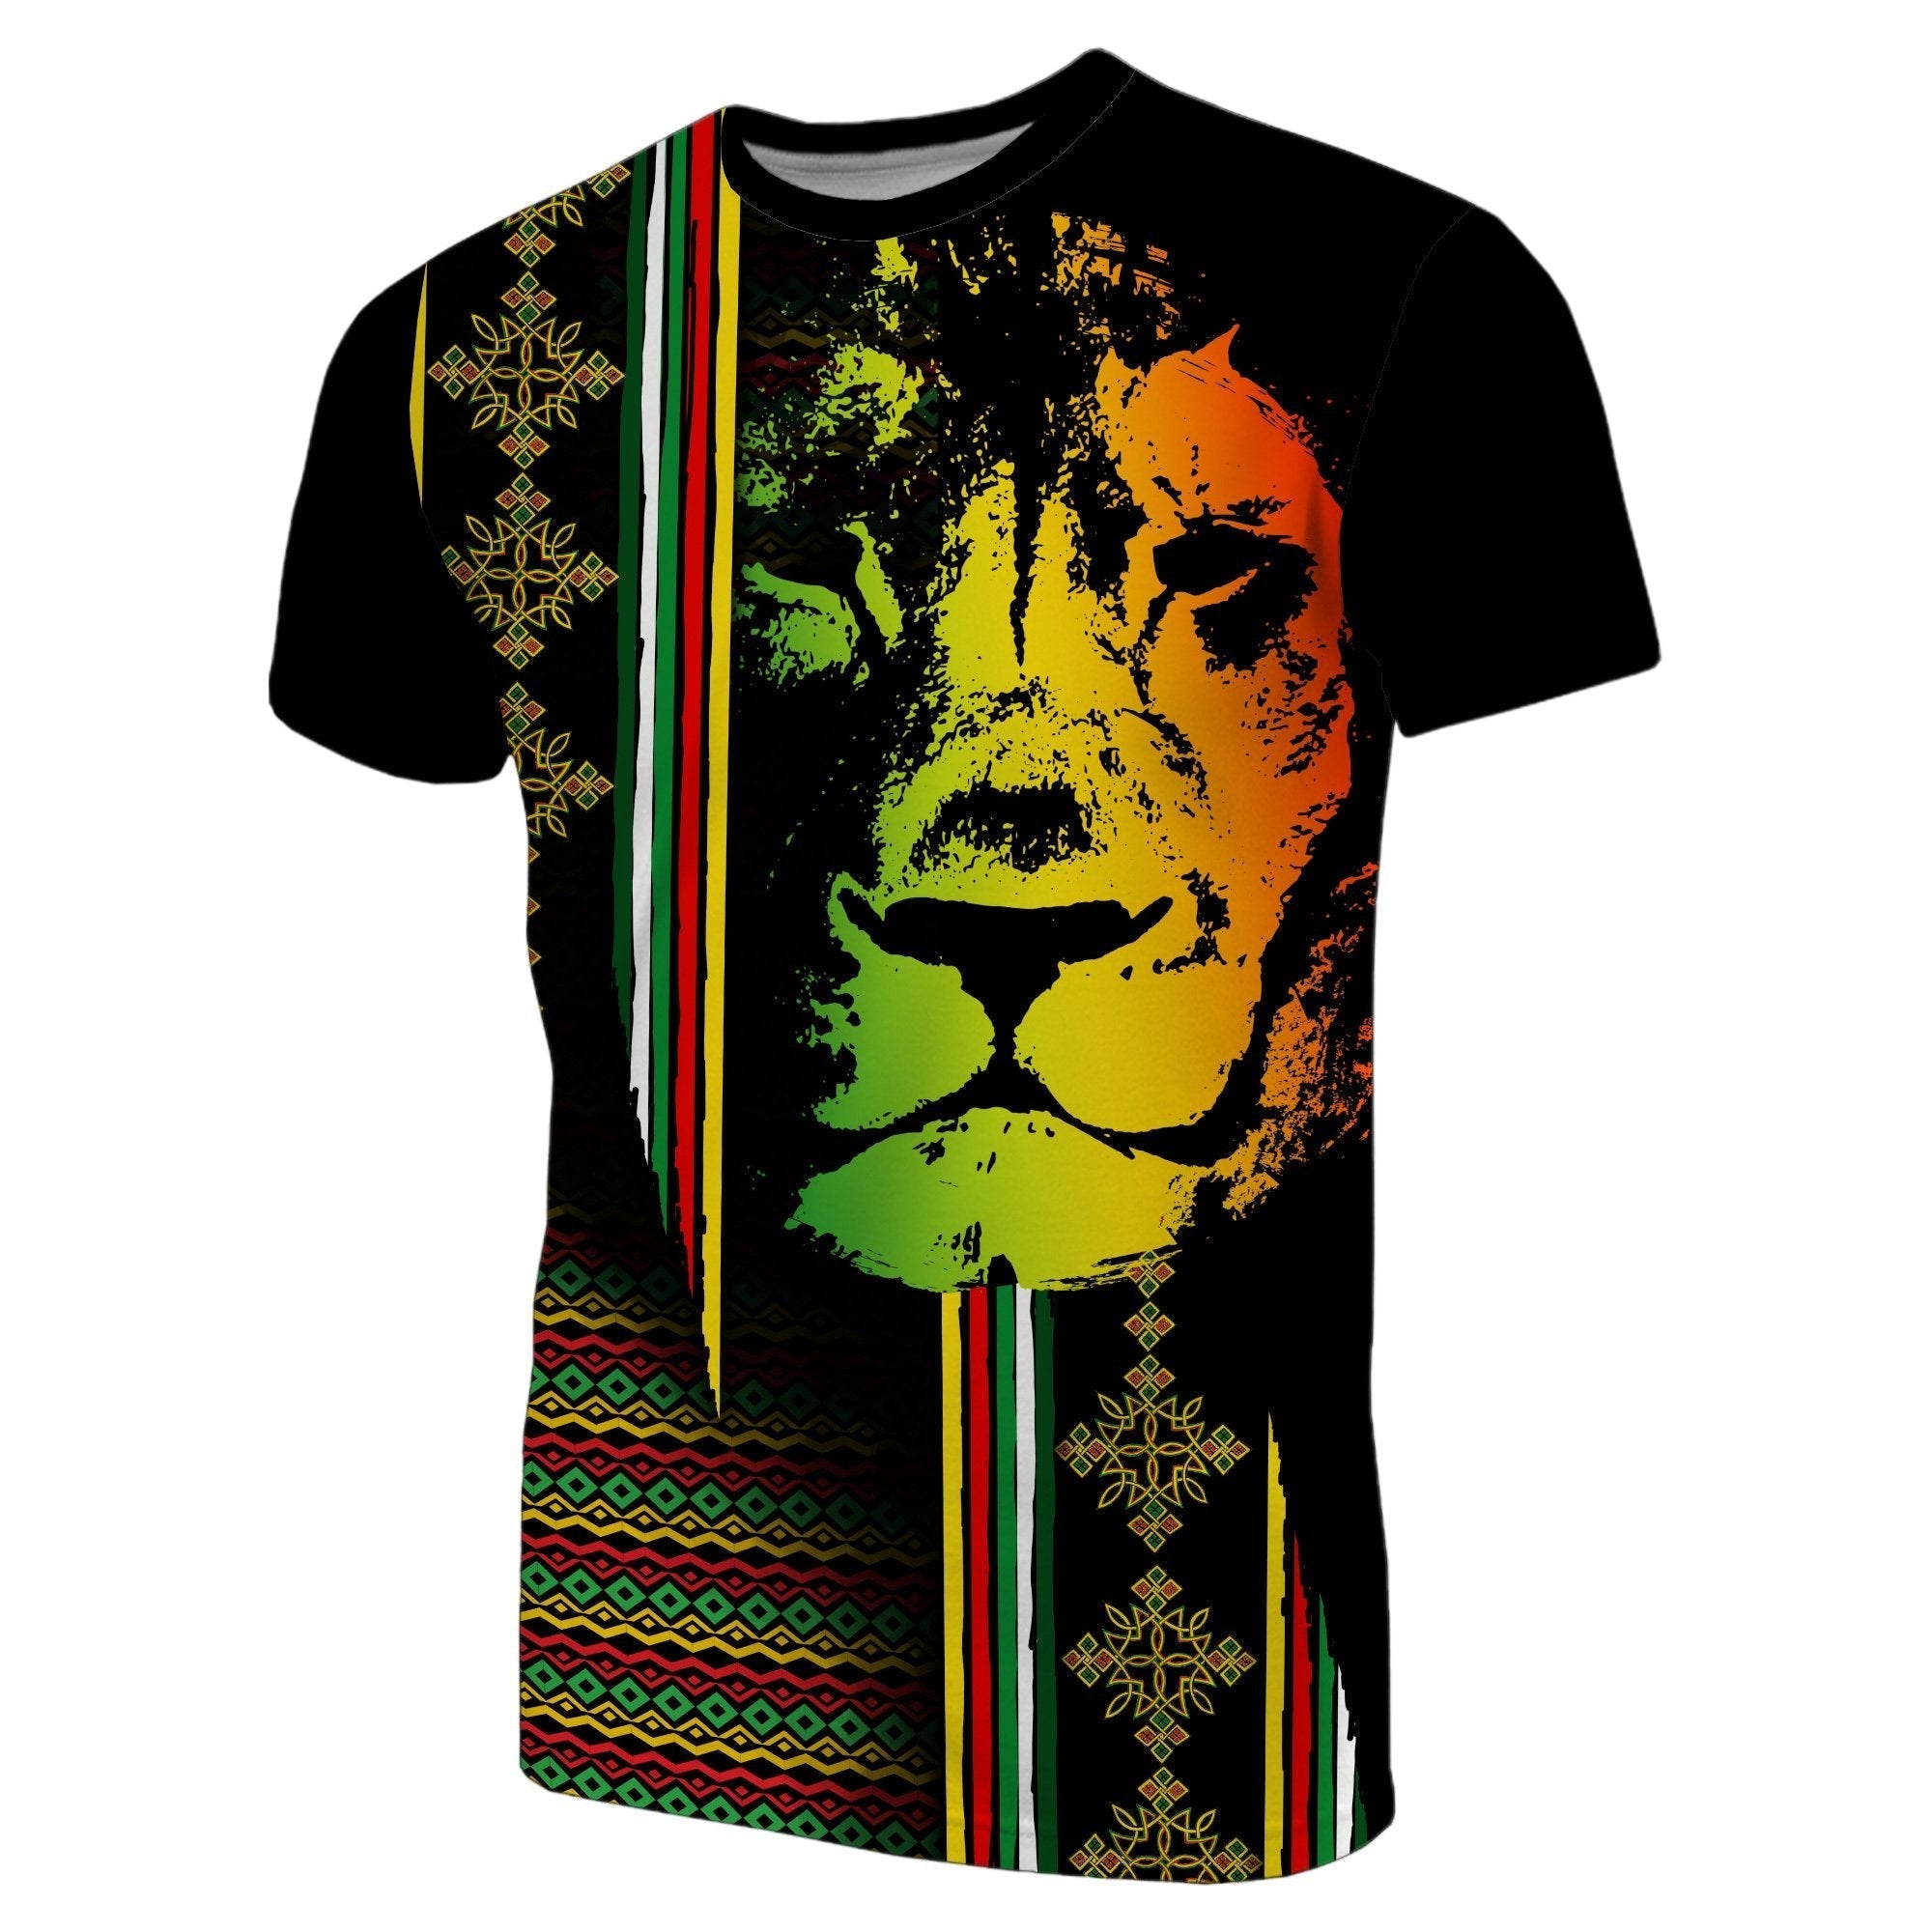 ethiopia-t-shirt-ethiopia-tilet-with-lion